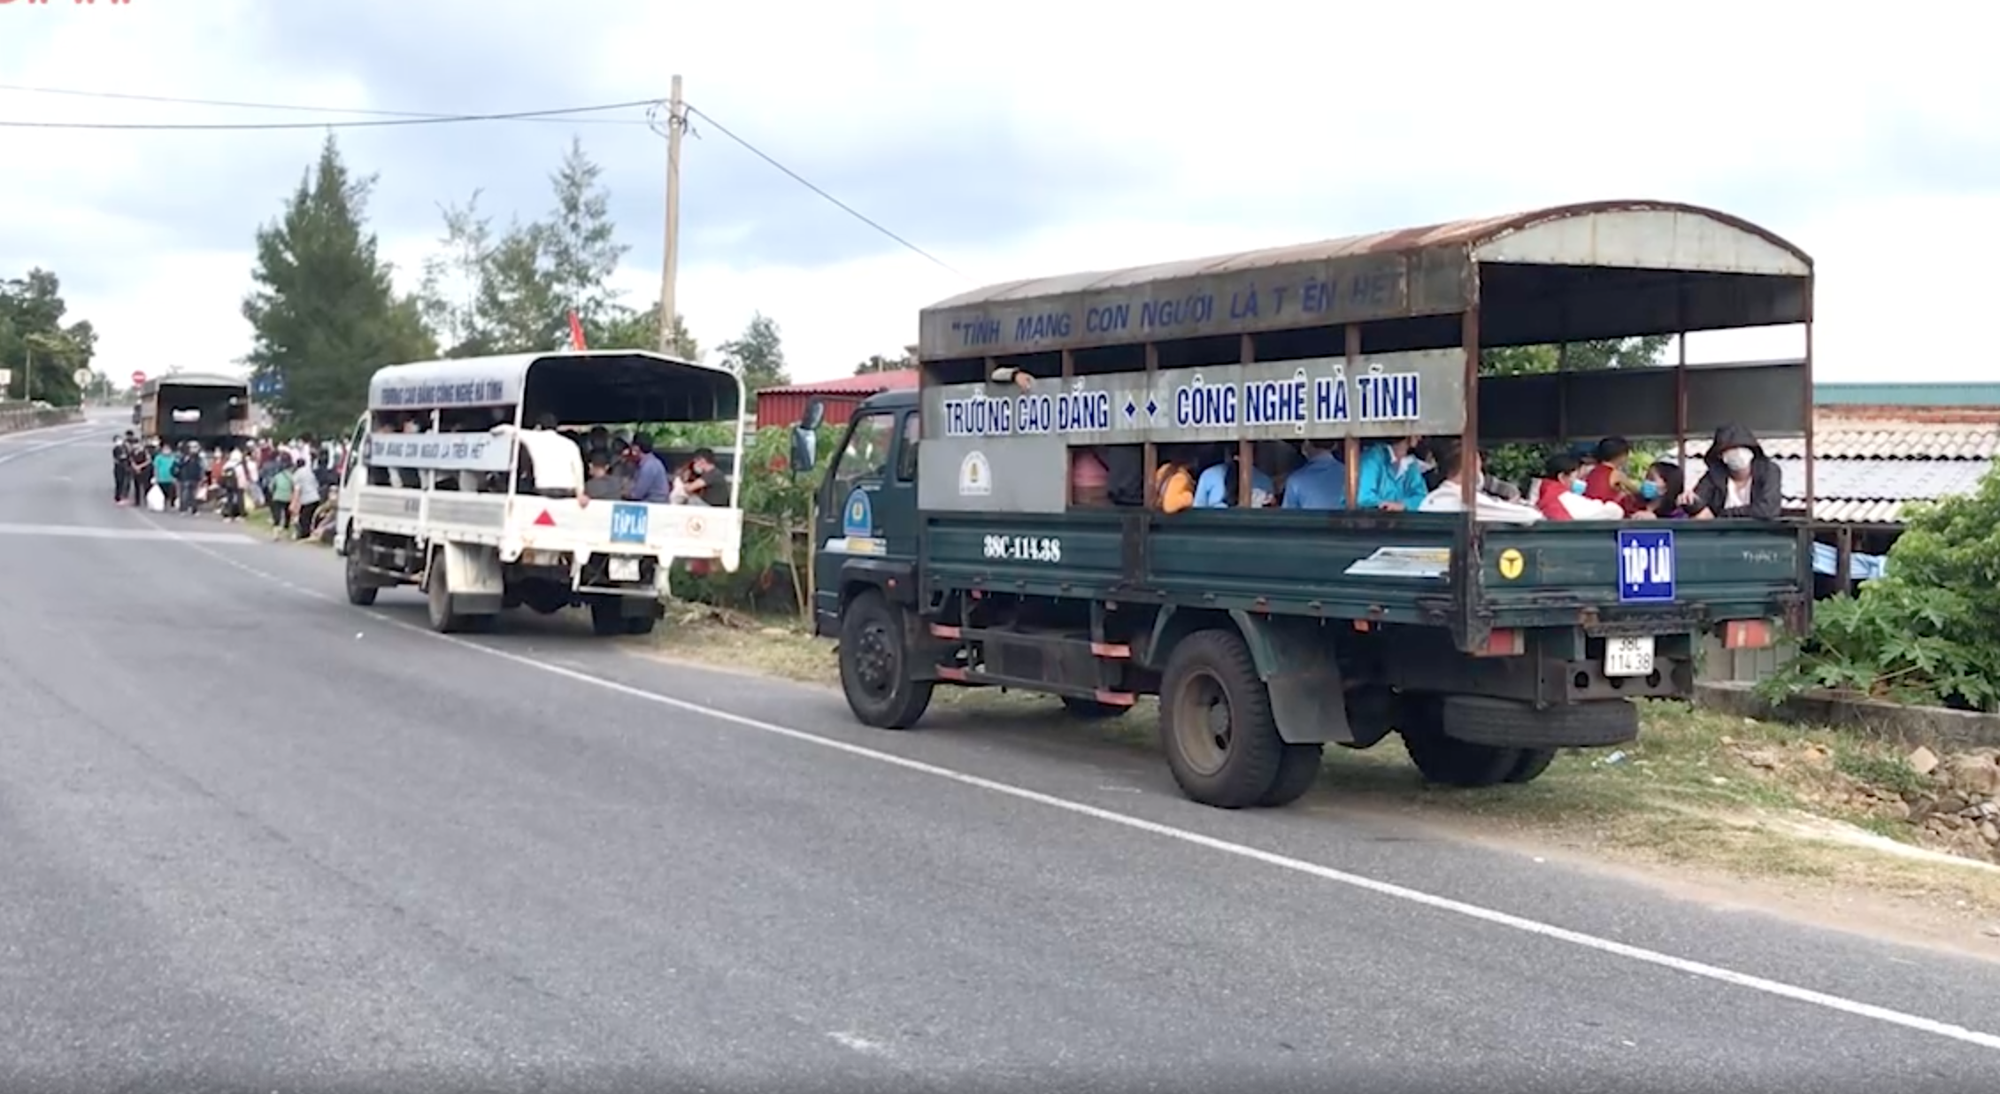 Huy động xe khách chở 400 người đi bộ từ các tỉnh phía Nam về quê - Ảnh 6.